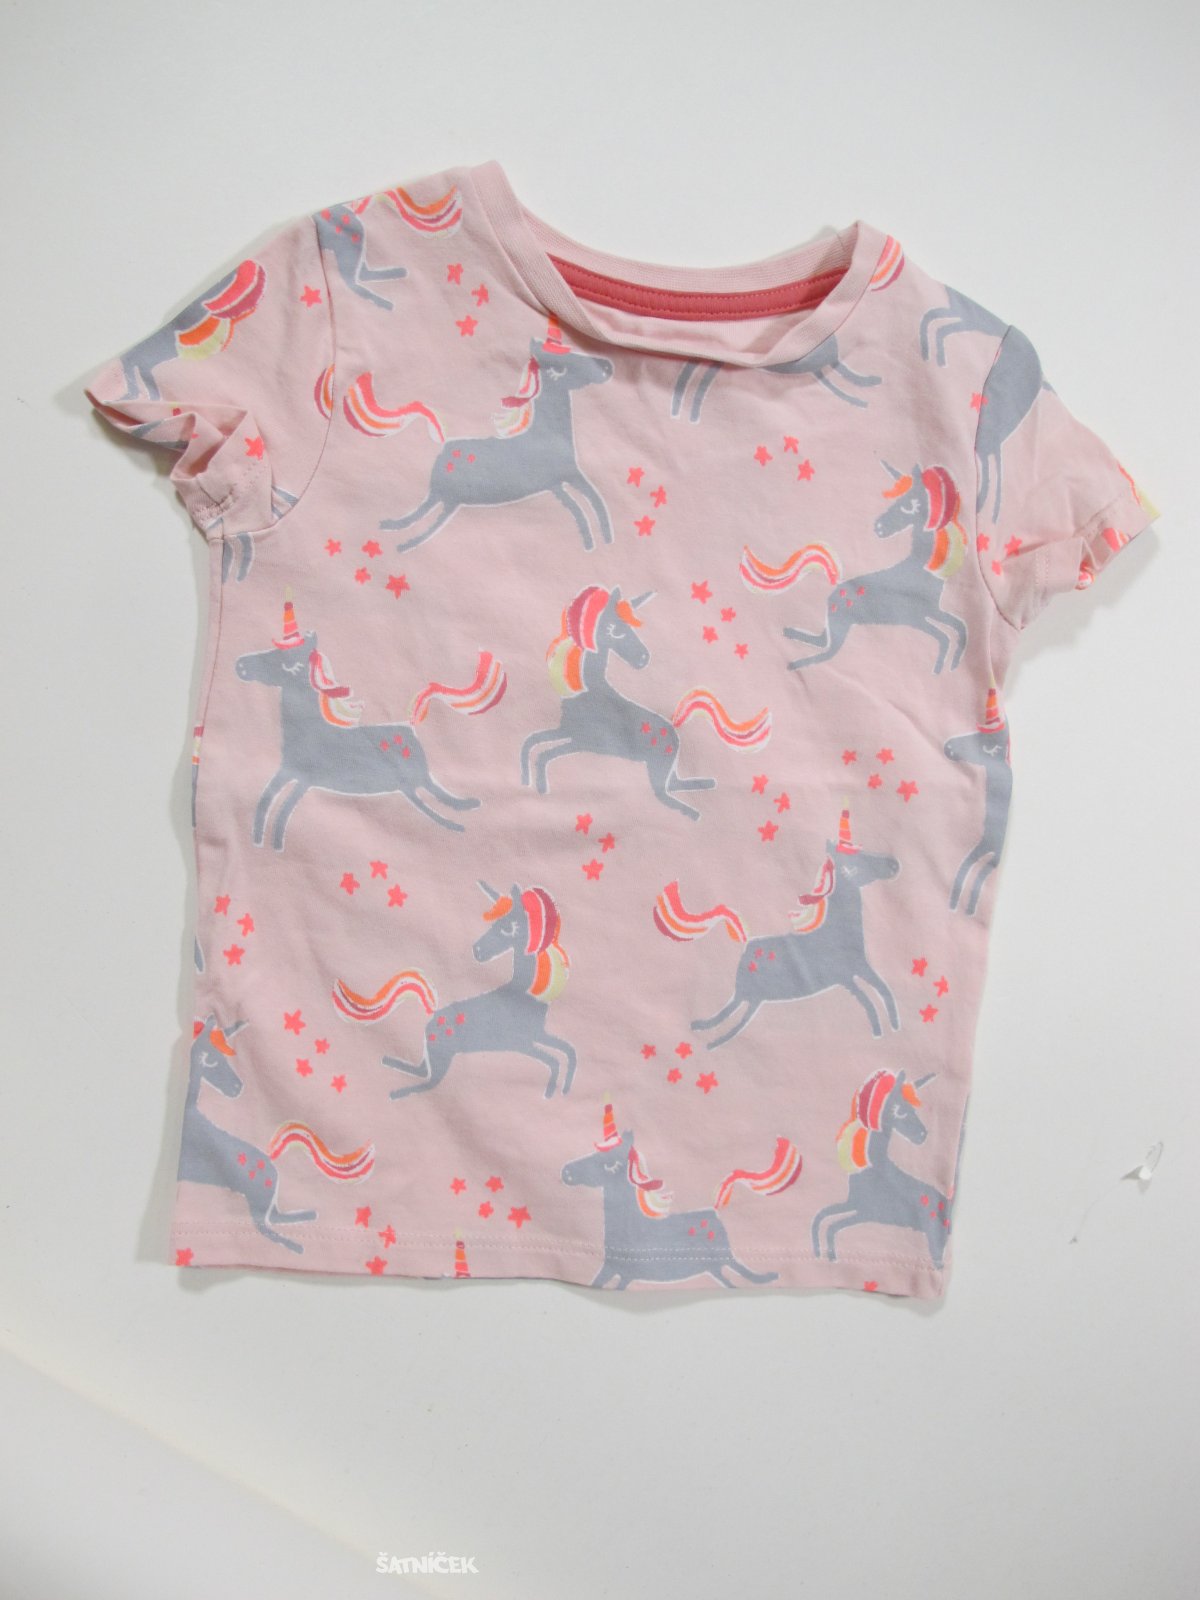 Obrázkové triko pro holky od pyžama secondhand